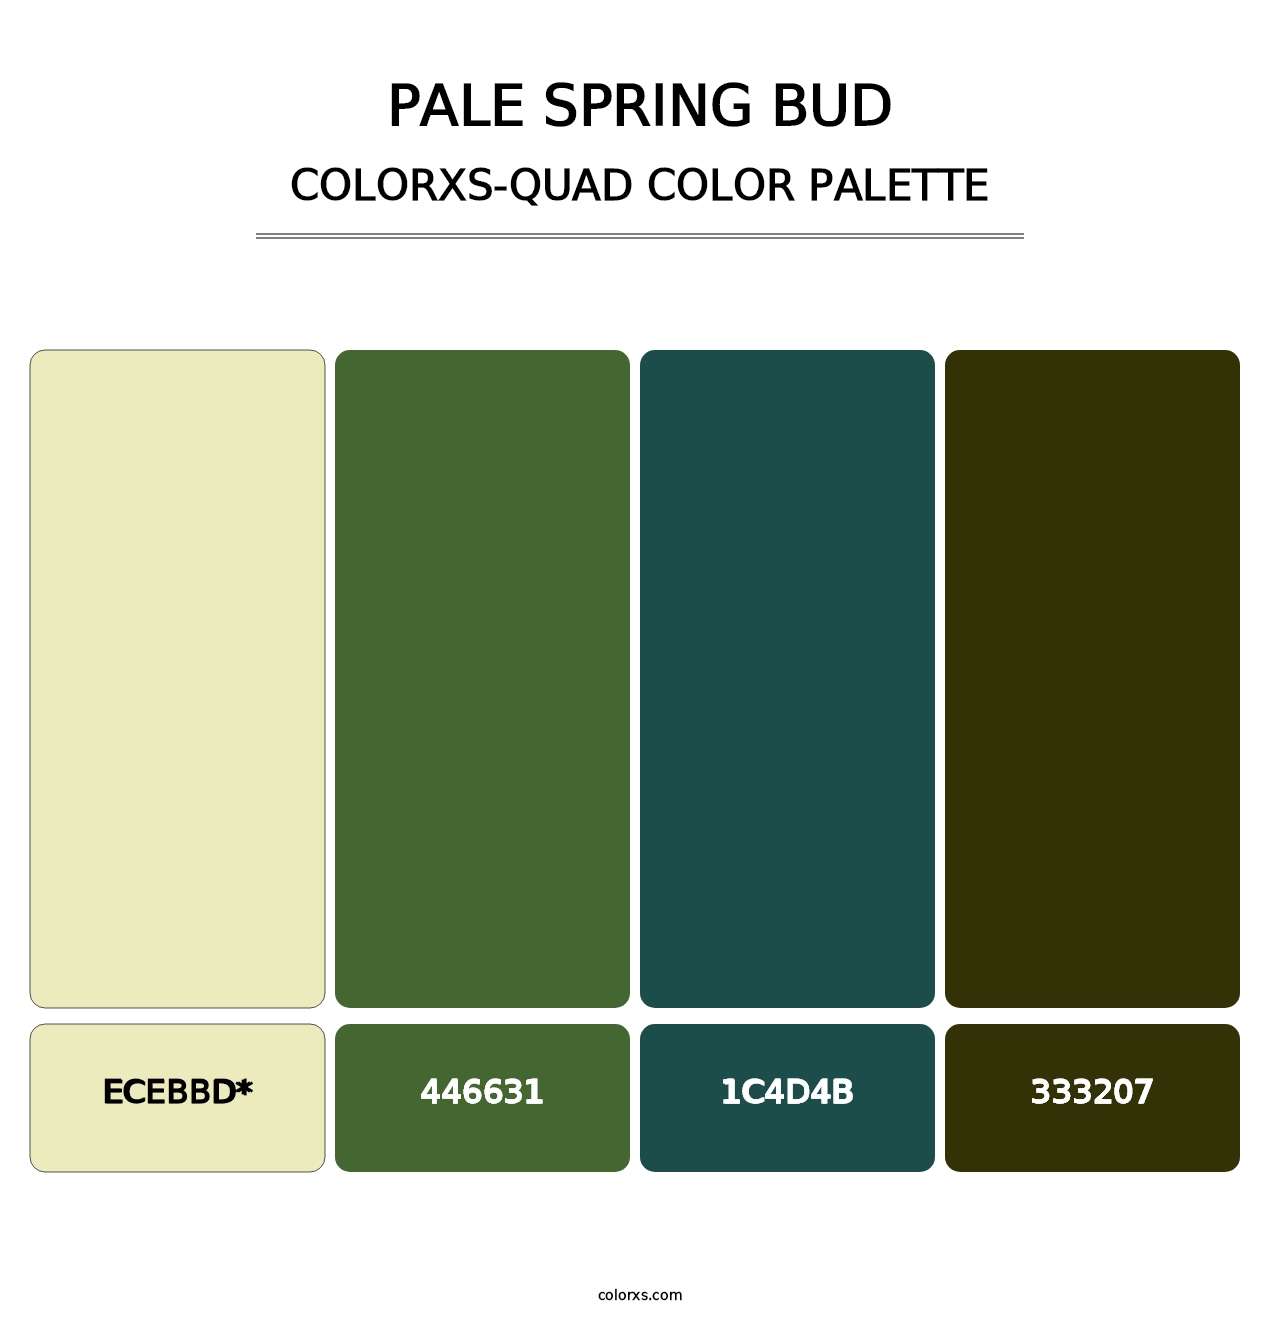 Pale Spring Bud - Colorxs Quad Palette